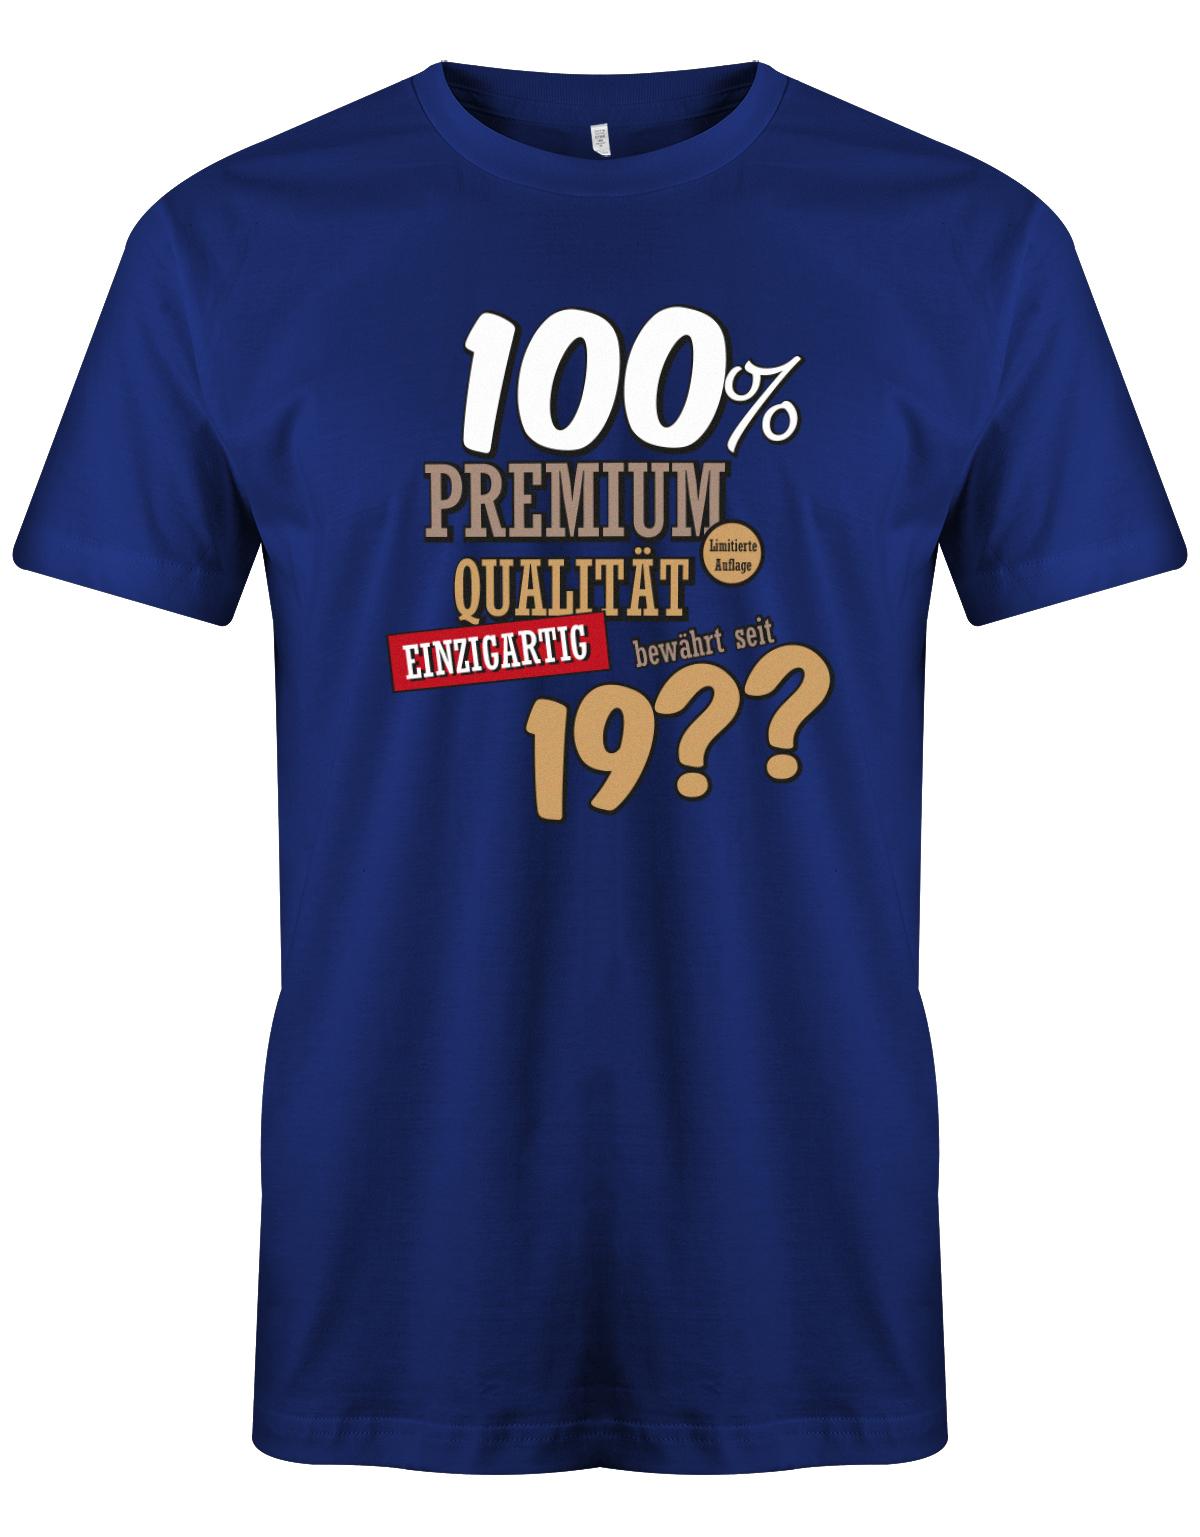 100Prozent-Premium-Qualit-t-shirt-seit-geburtsjahr-Herren-Geburtstag-Shirt-Lustiges T-Shirt zu Bedruckt Junge Lustig ist ein tolles  geschenk Jungen  geburtstag Junge  Geburtstag tshirt ✓ shirt geburtstag royalblau